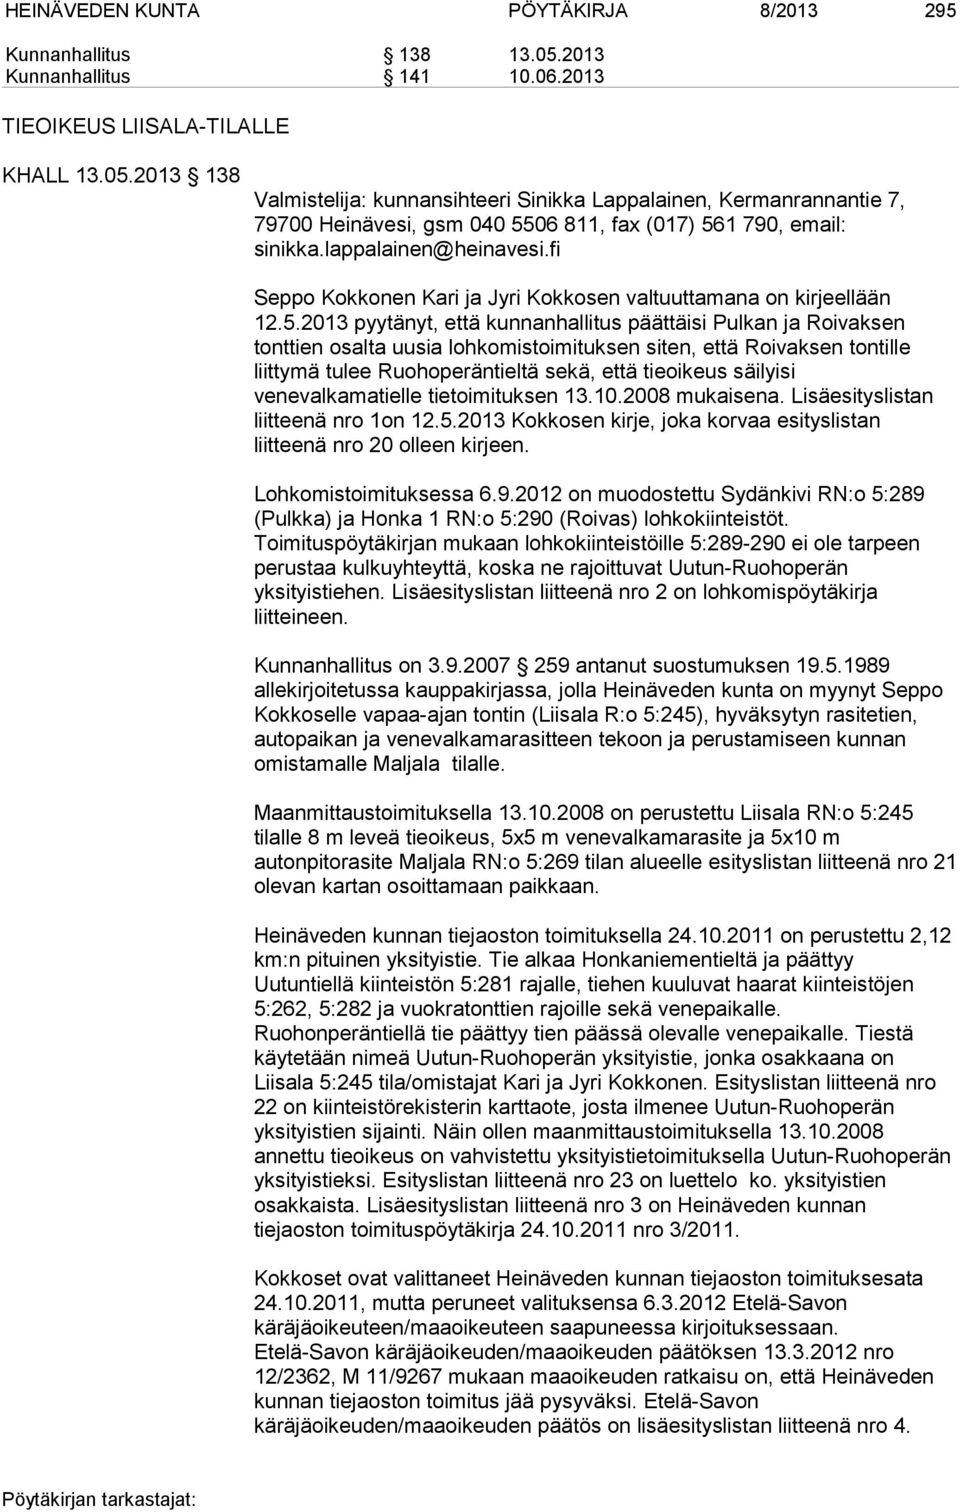 2013 138 Valmistelija: kunnansihteeri Sinikka Lappalainen, Kermanrannantie 7, 79700 Heinävesi, gsm 040 5506 811, fax (017) 561 790, email: sinikka.lappalainen@heinavesi.